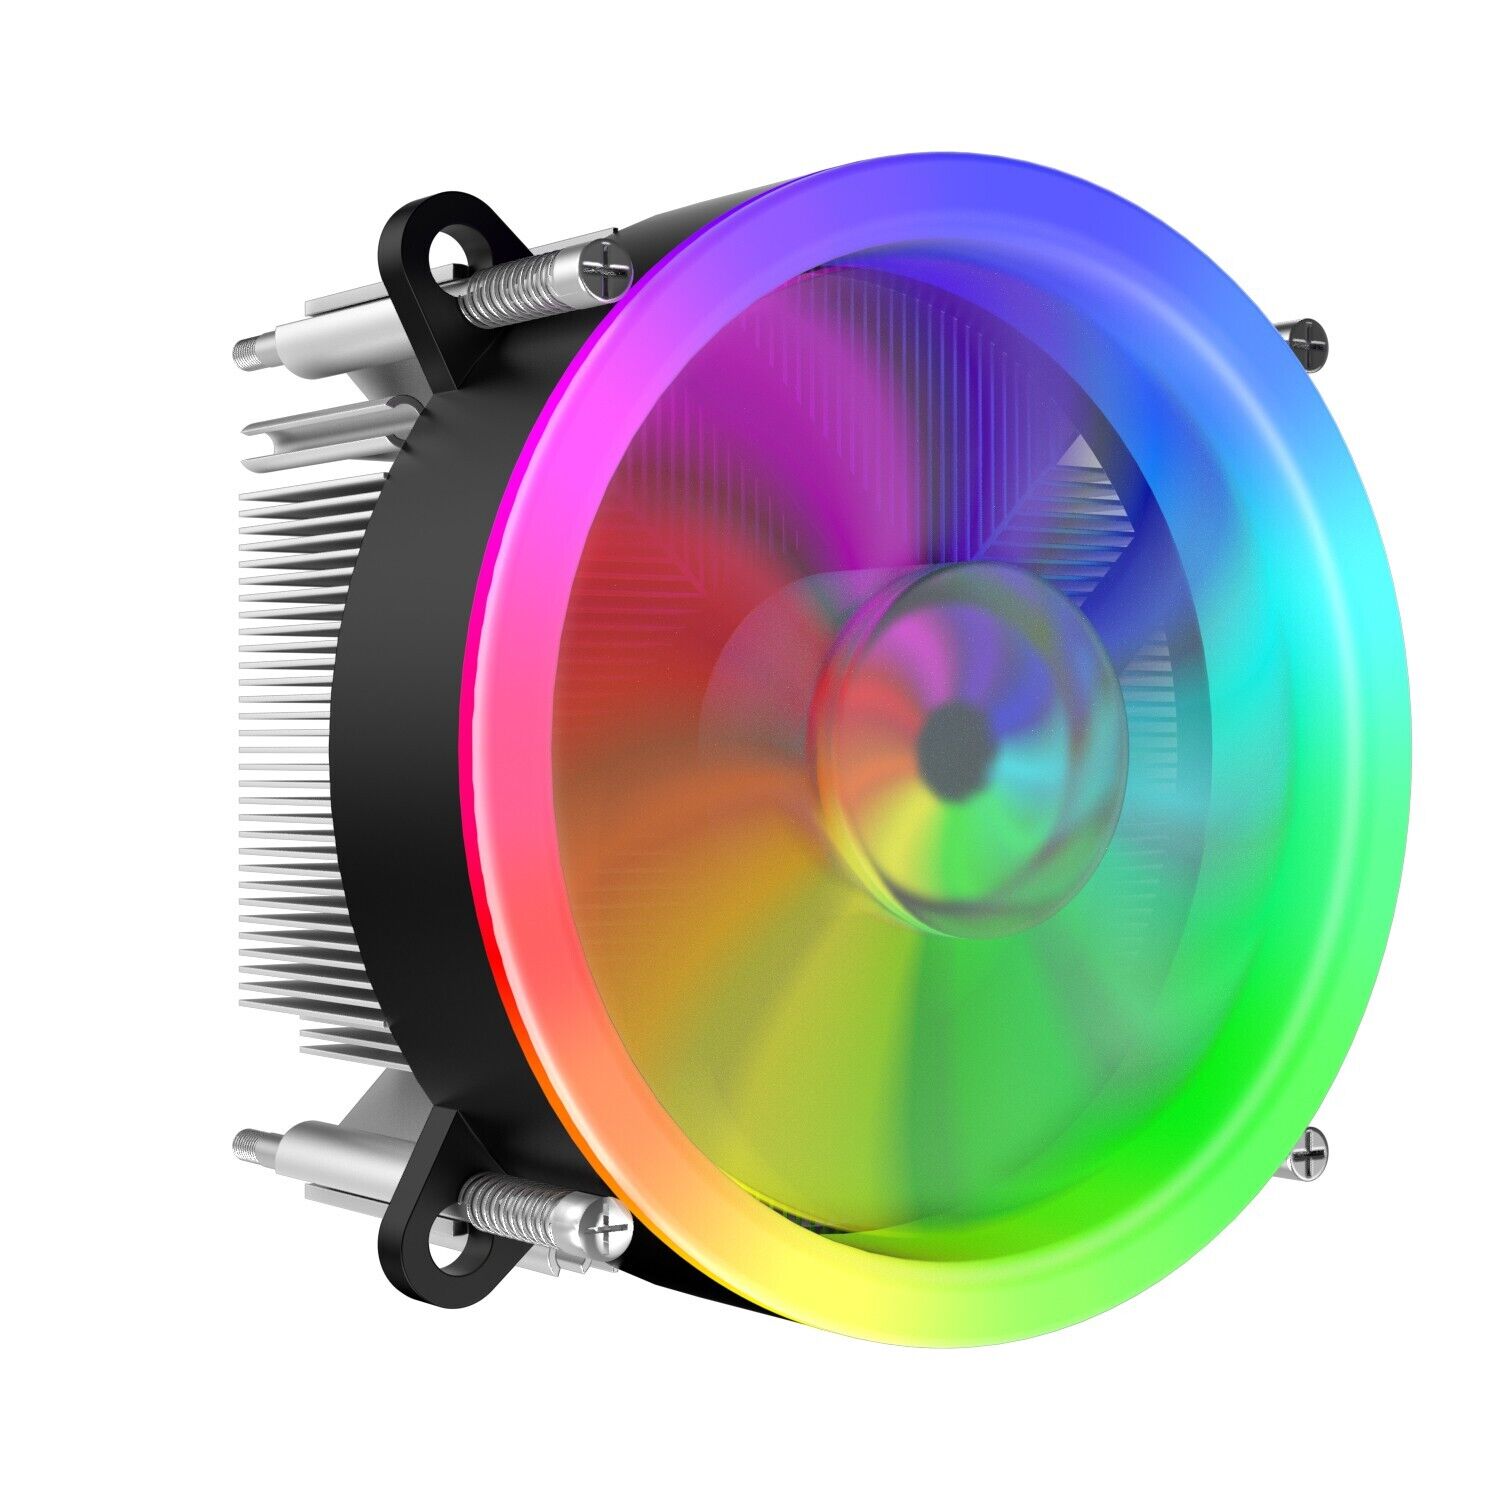 CPU Cooler Heatsink Fan Air Cooler RGB LED PWM For Intel LGA 1156/775/i5/1366